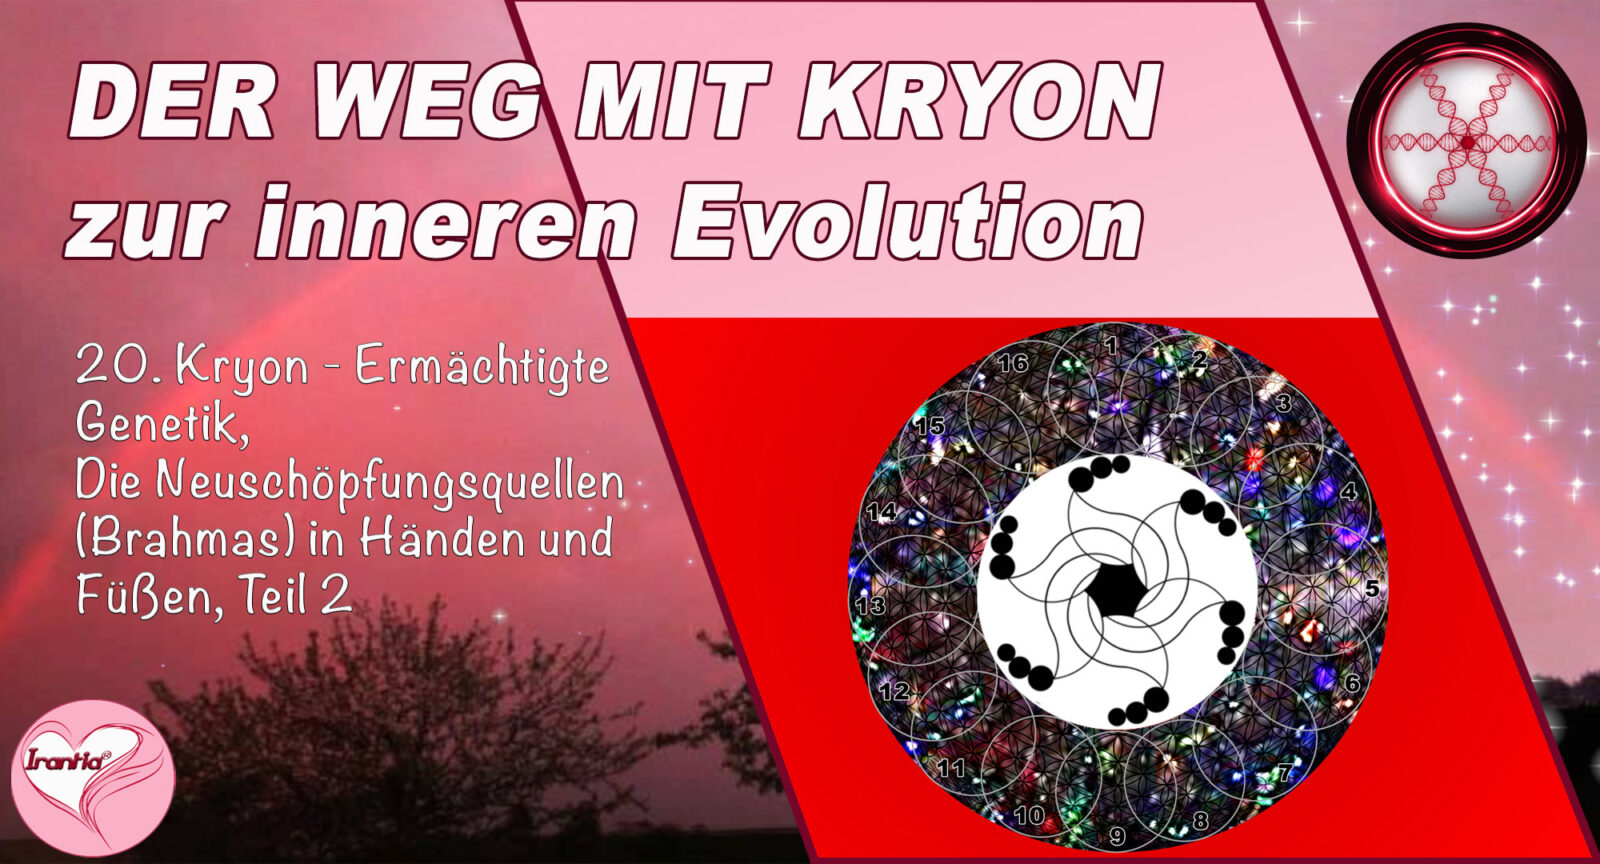 20. Der Weg mit Kryon zur inneren Evolution, Ermächtigte Genetik, Neuschöpfungsquellen (Brahmas)in Händen und Füßen 2, Teil 20